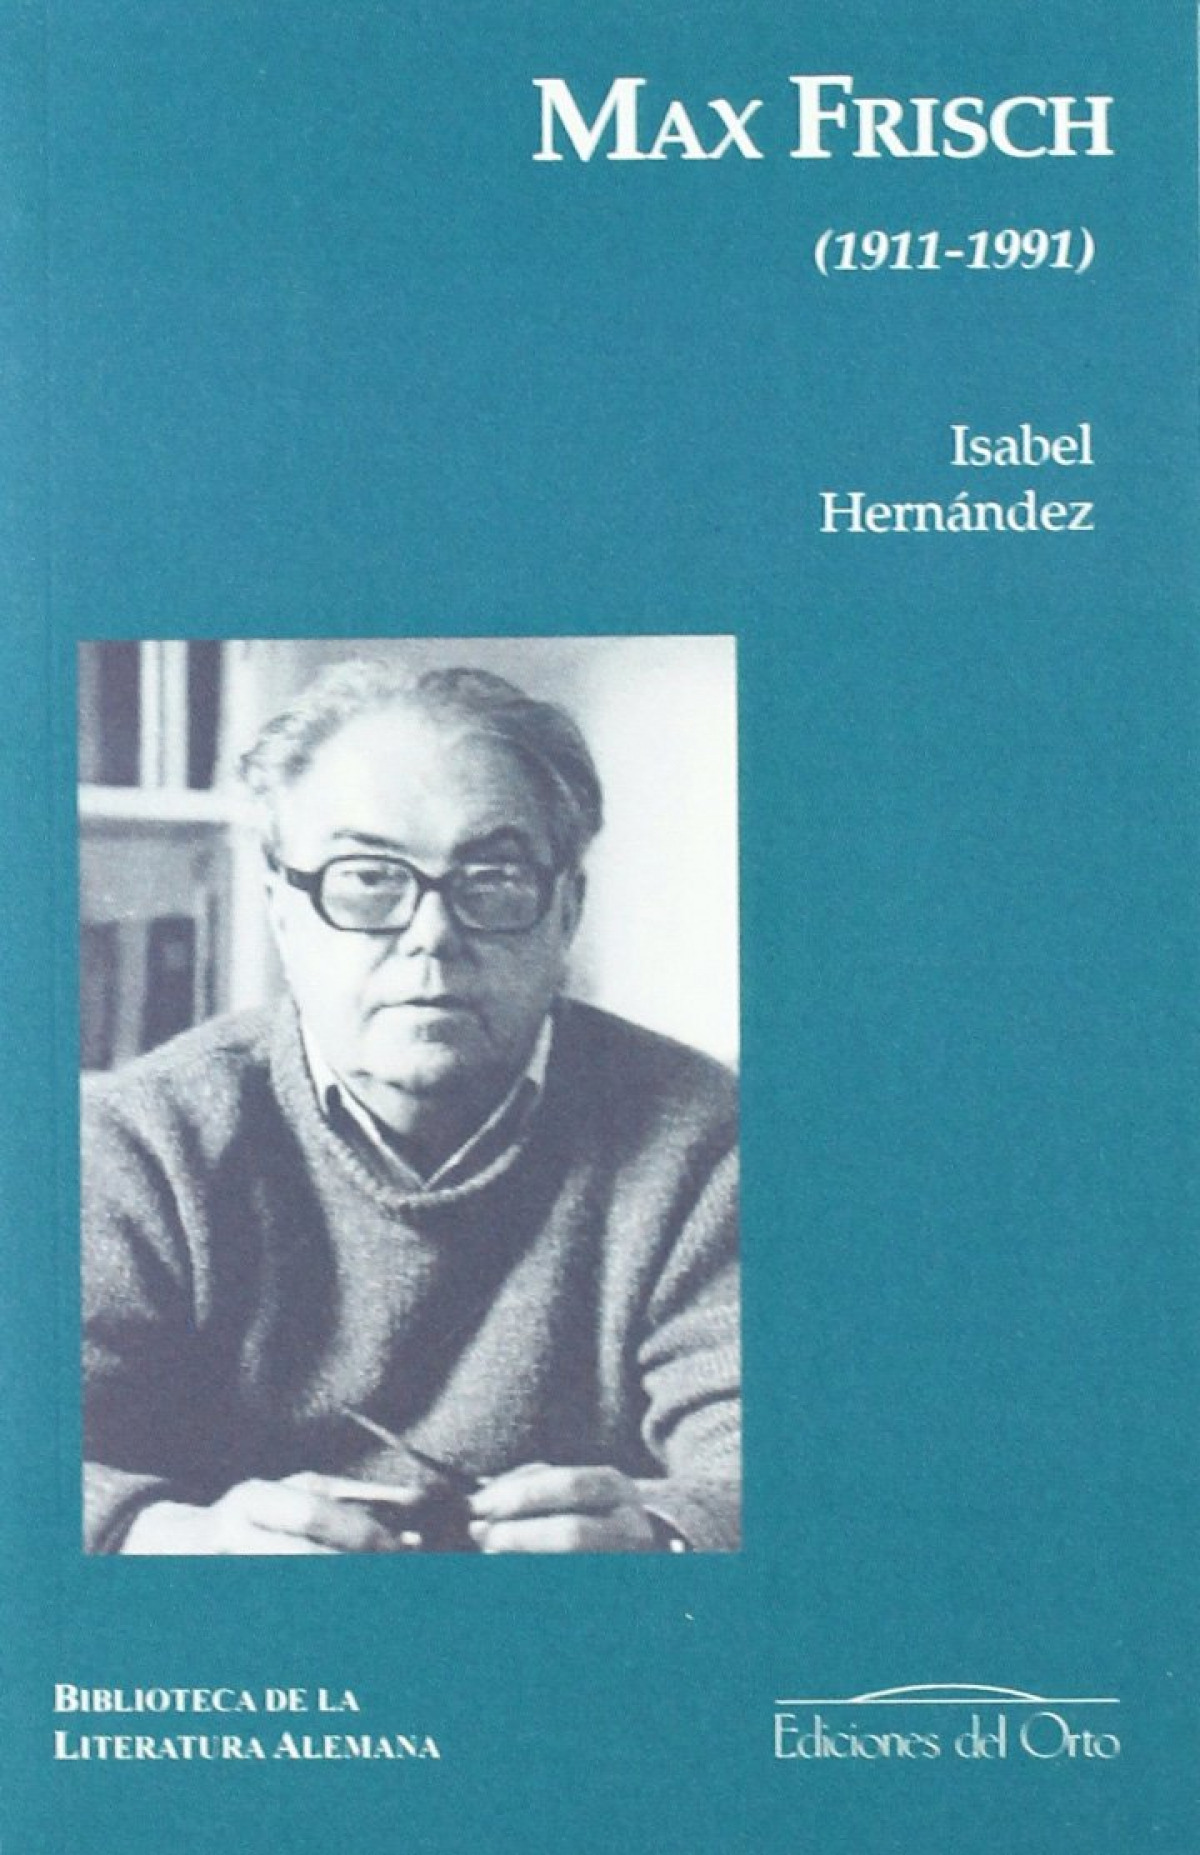 Max frisch 1911-1991 - Isabel Hernandez Leon